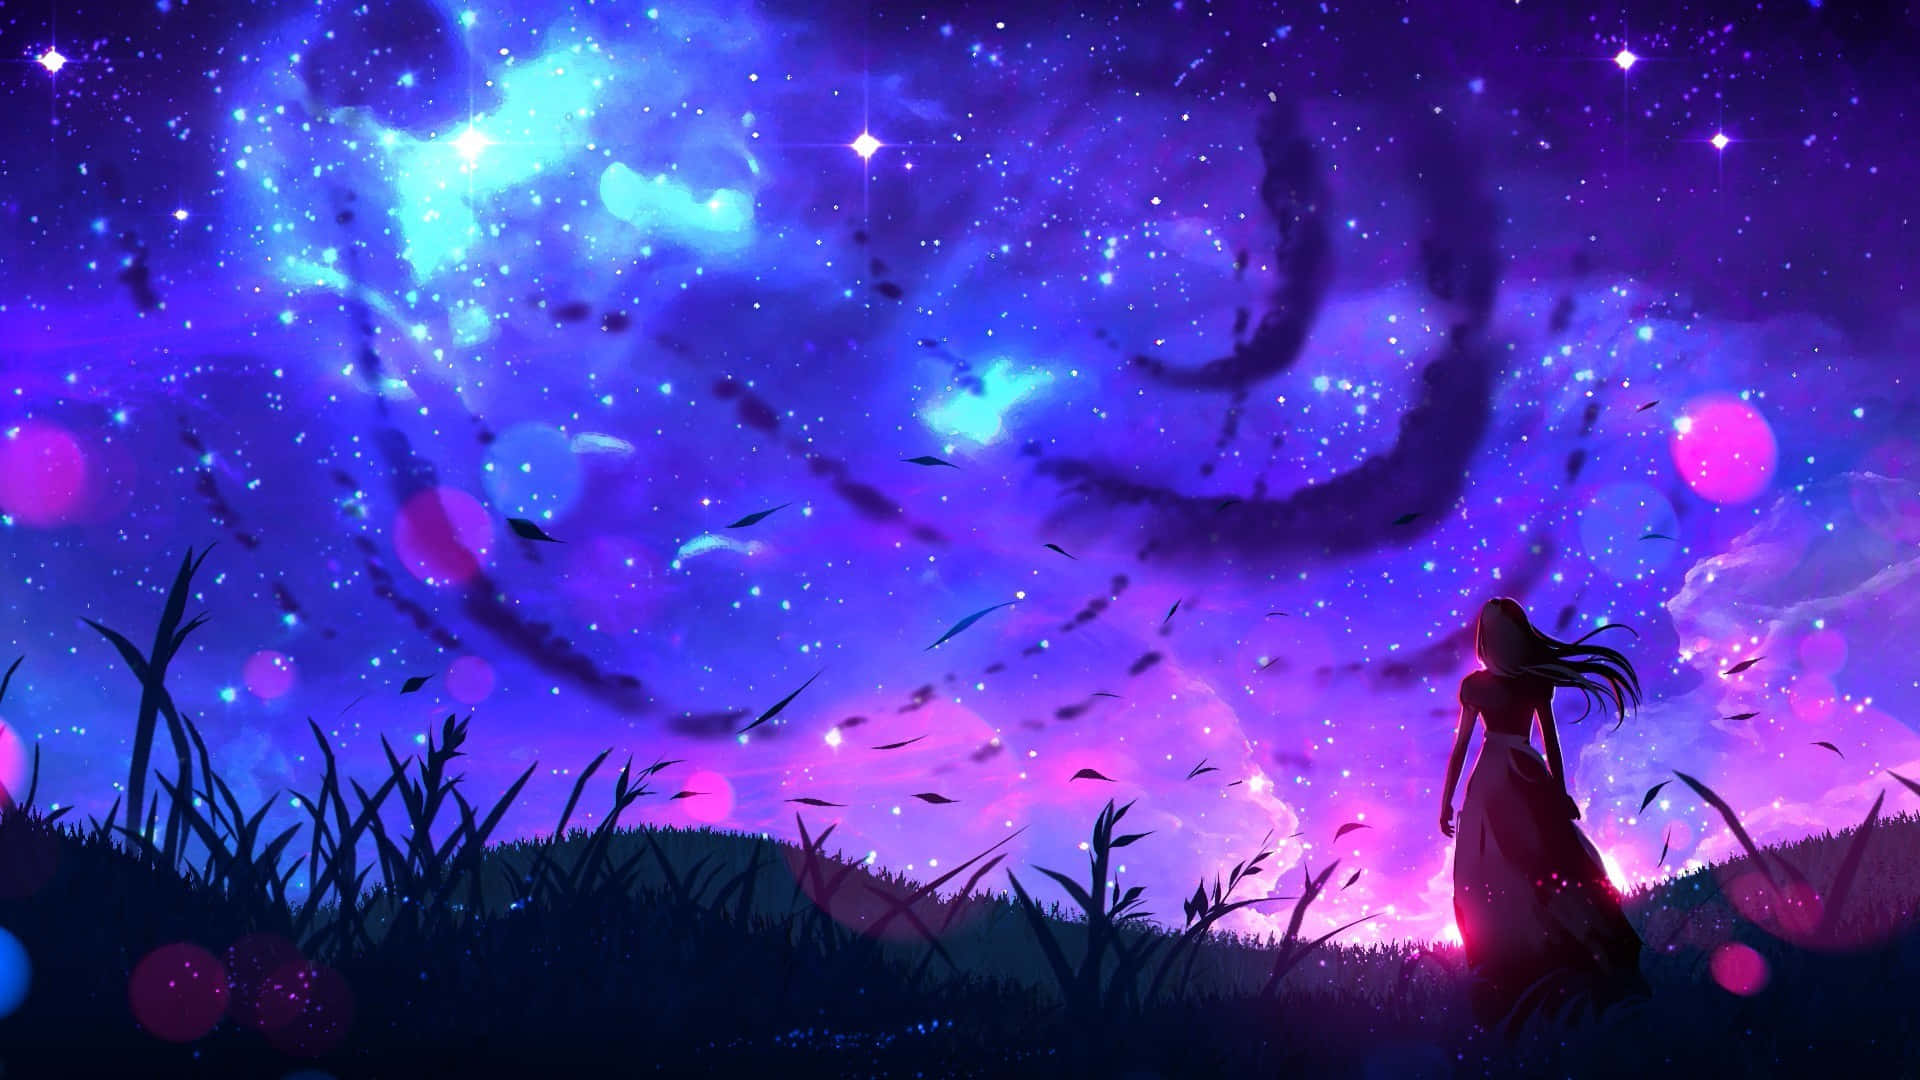 Himmelmit Wirbelnden Wolken Nacht Anime Wallpaper